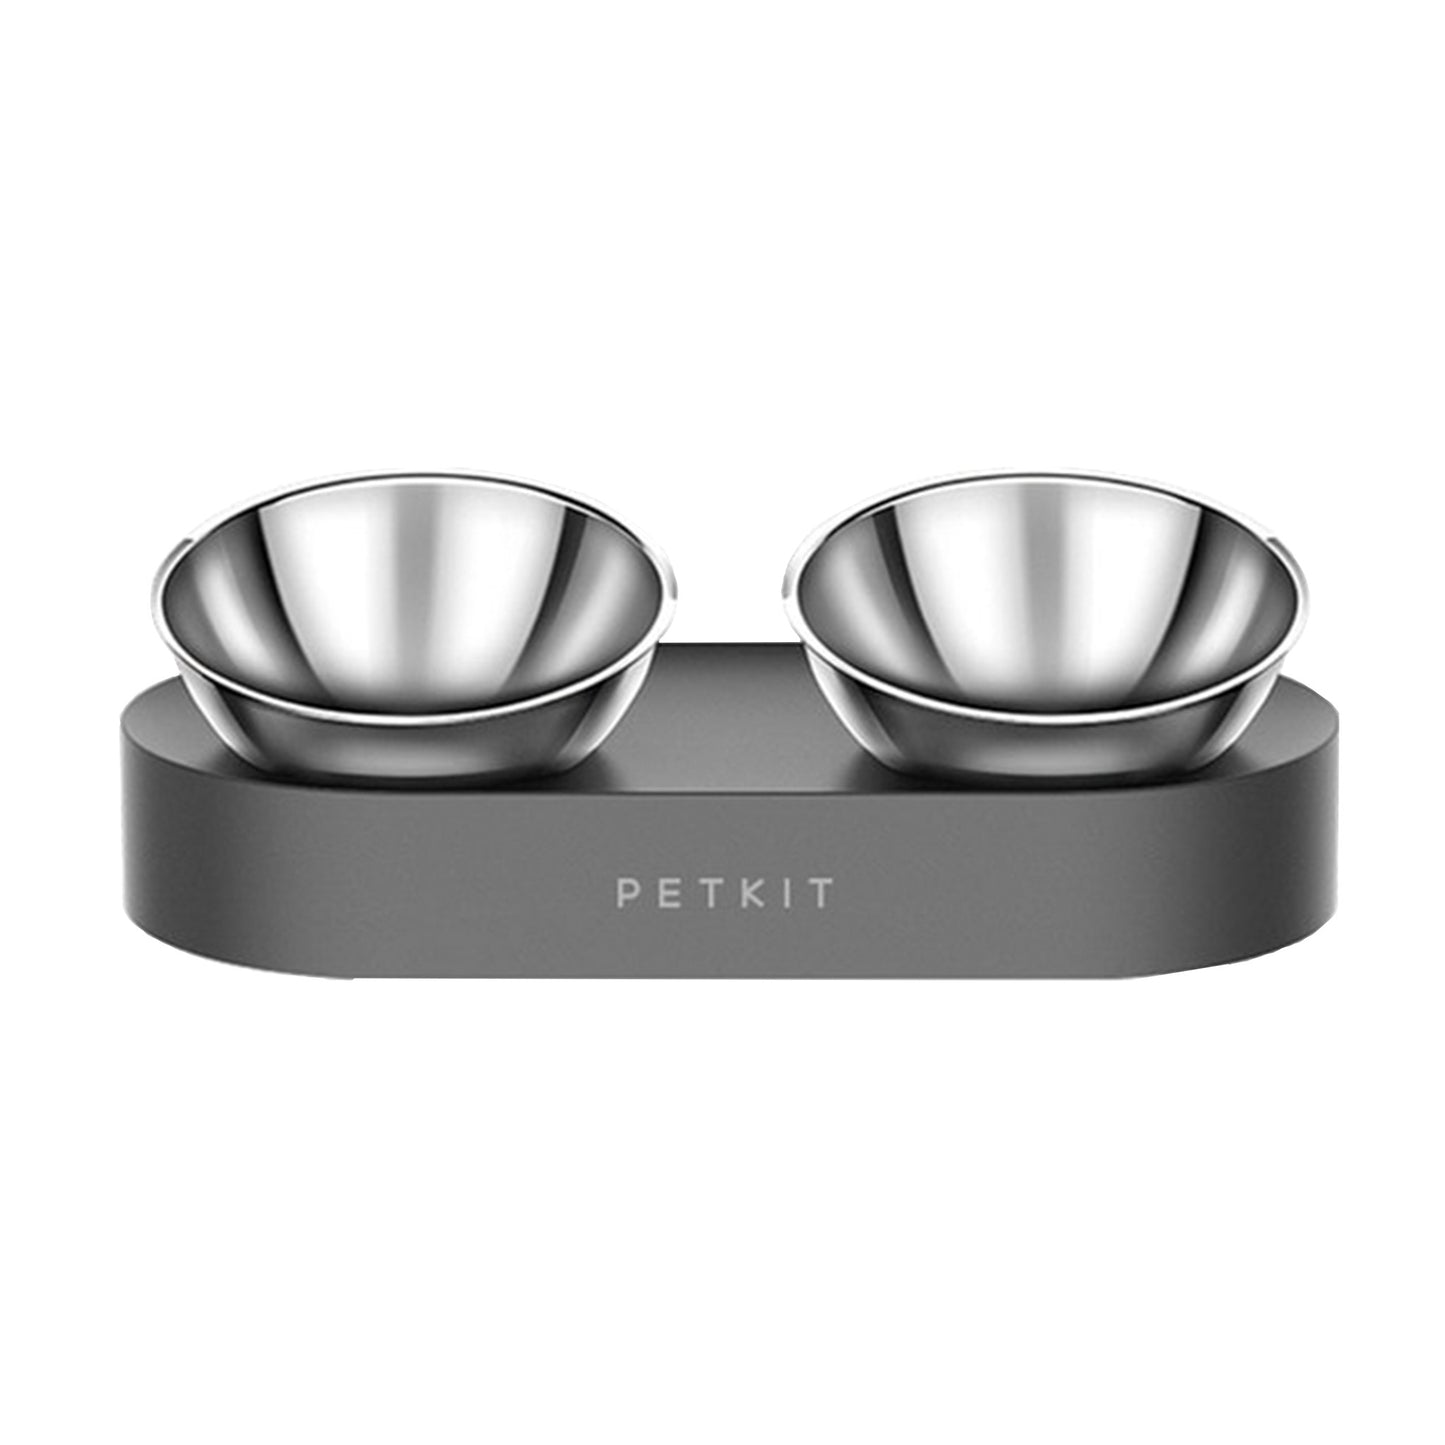 Double Metal Pet bowls